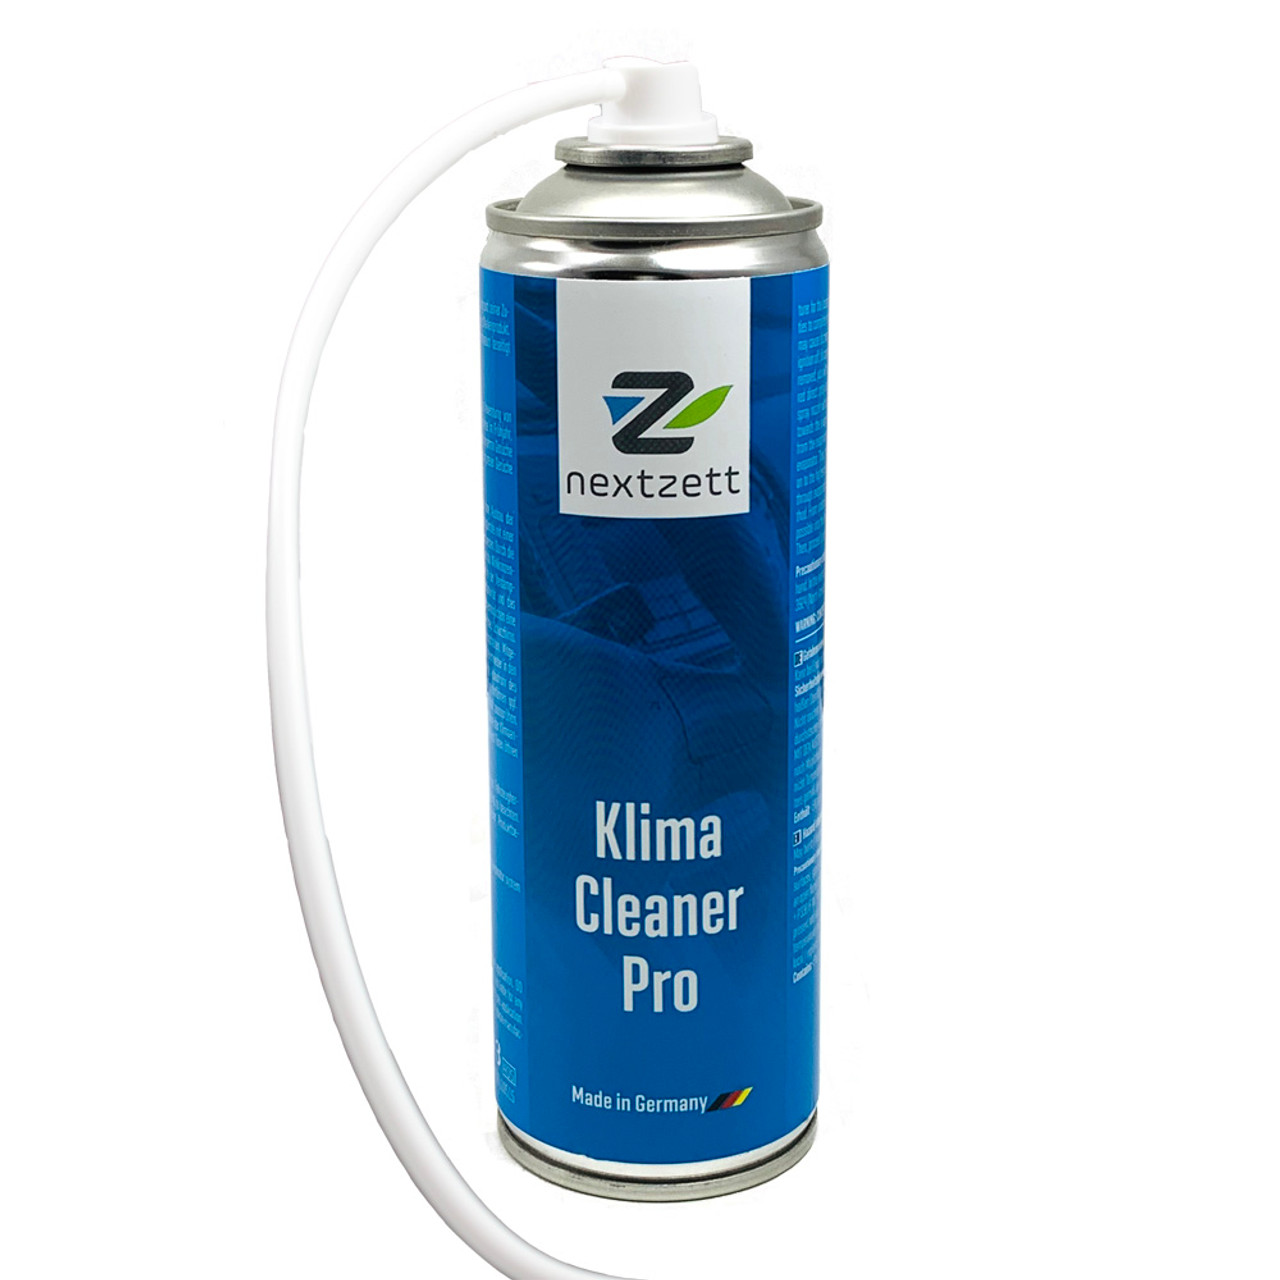 nextzett Klima Cleaner Pro Car Air Conditioner Cleaner Foam